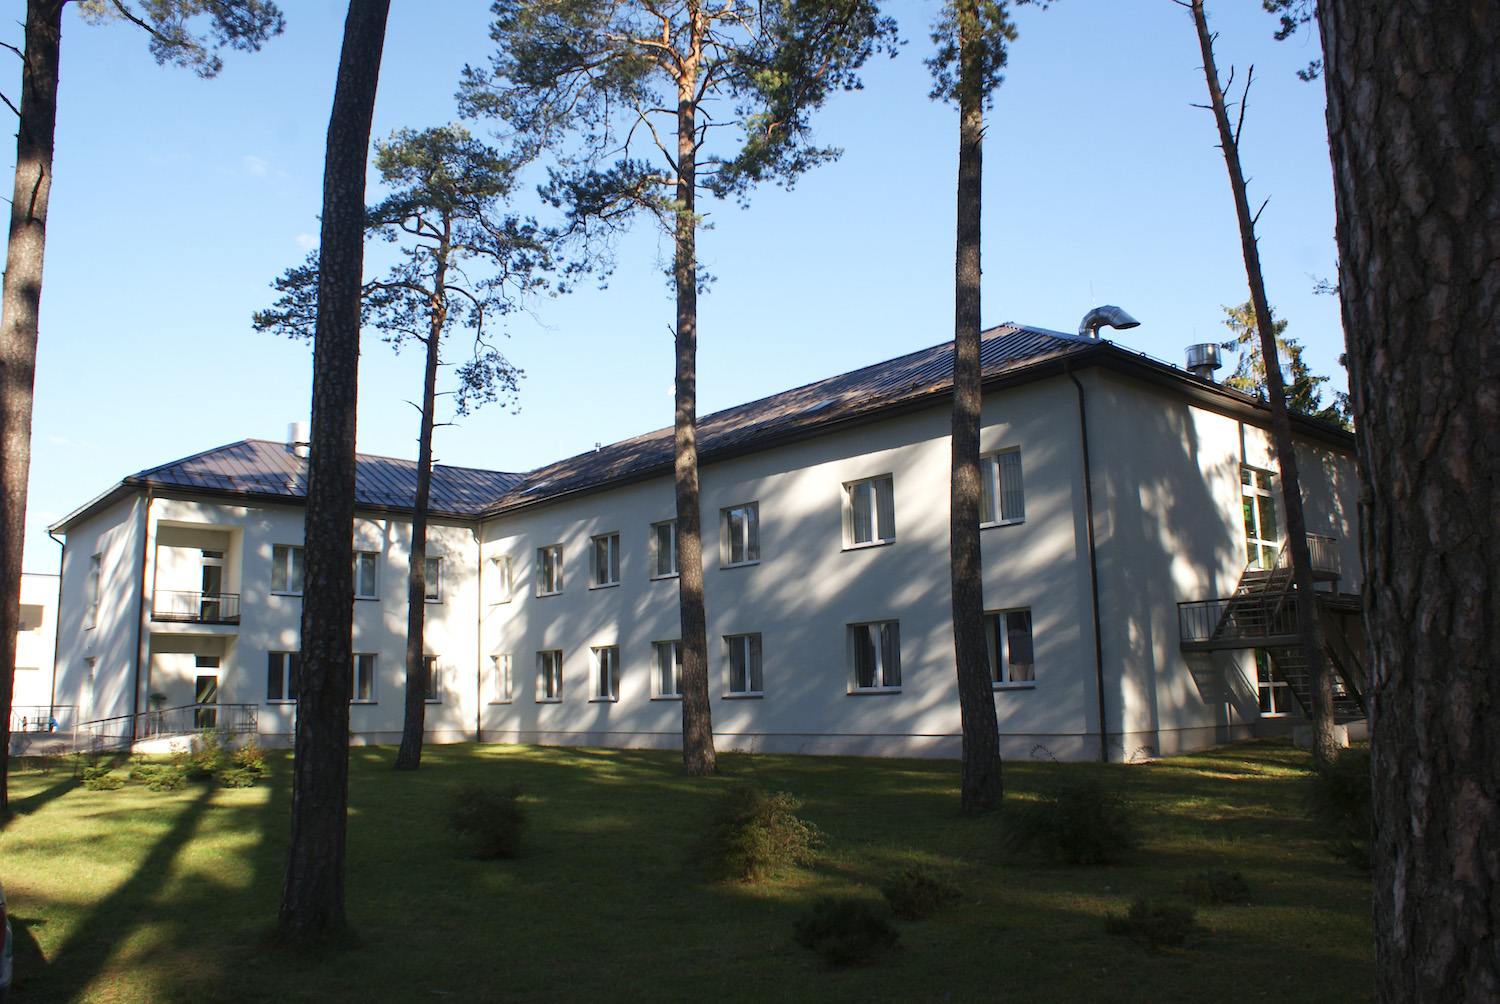 Jēkabpils Reģionālās slimnīcas 5. stāvu ēkas rekonstrukcija ar infekciju slimību un dienas stacionāra nodaļu piebūvi